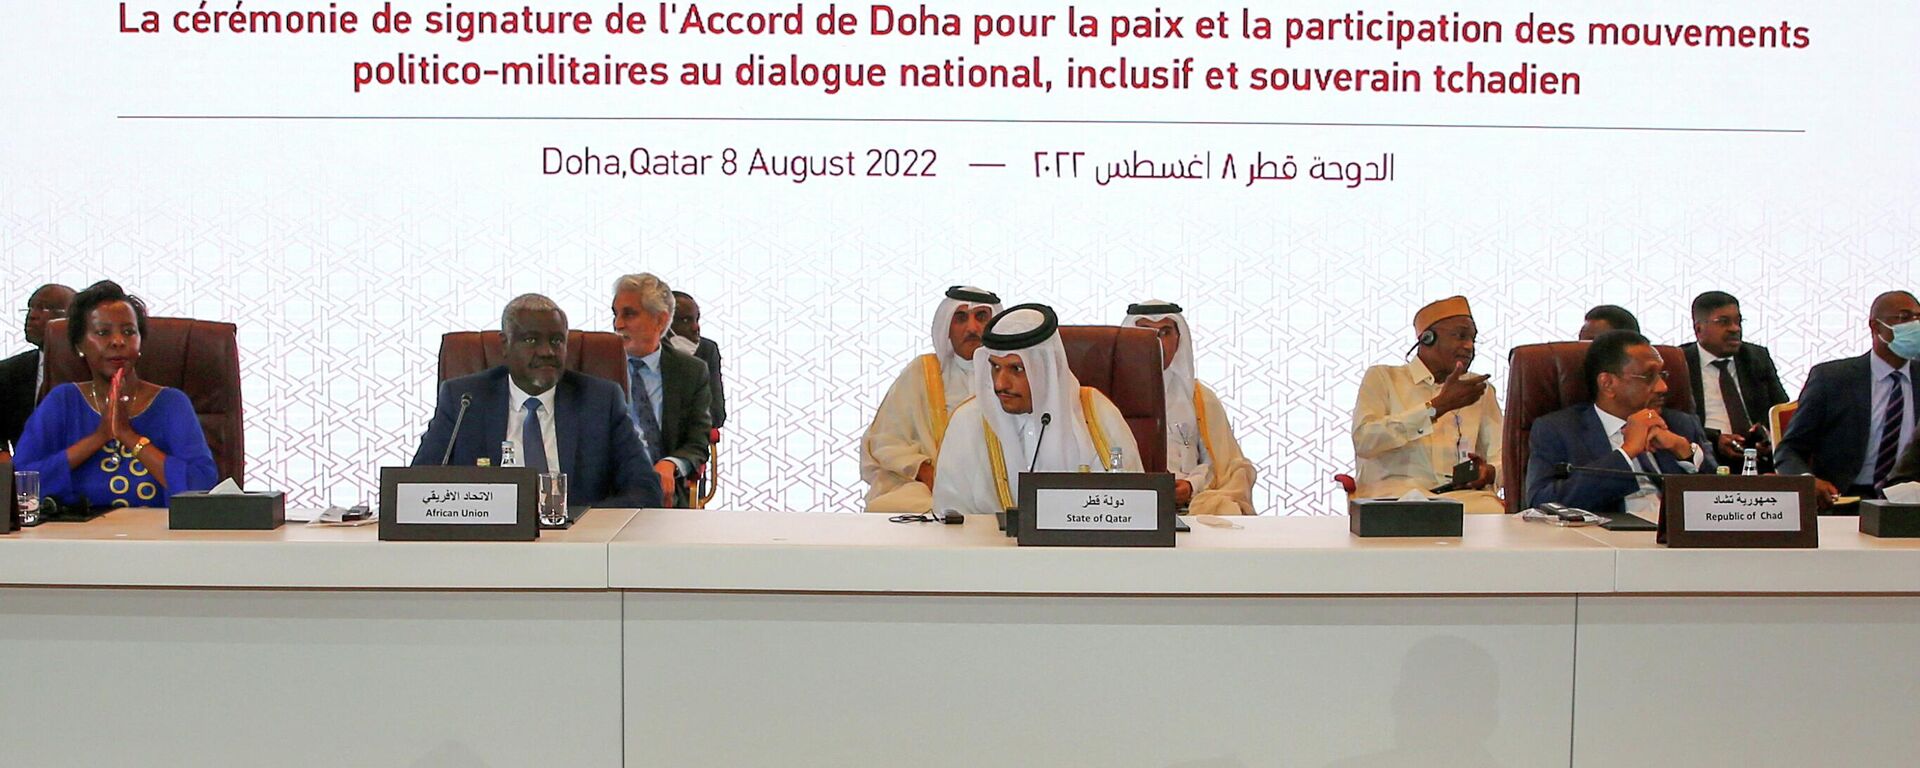 قطر تستضيف في عاصمتها حفل توقيع اتفاقية الدوحة للسلام في تشاد، 8 أغسطس/ آب 2022 - سبوتنيك عربي, 1920, 12.08.2022